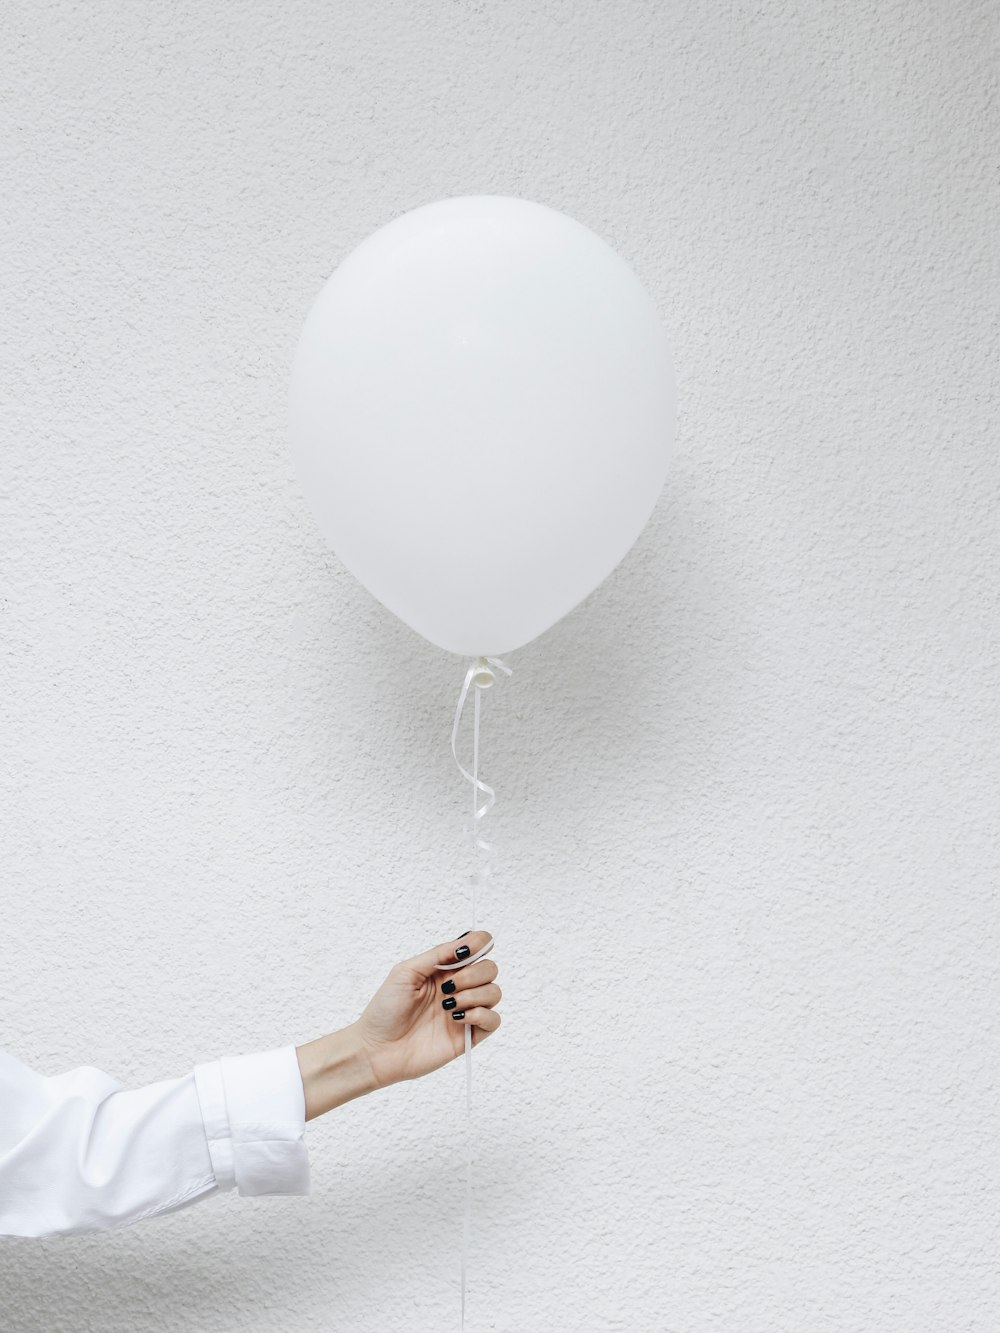 Persona sosteniendo globos blancos cerca de una pared blanca